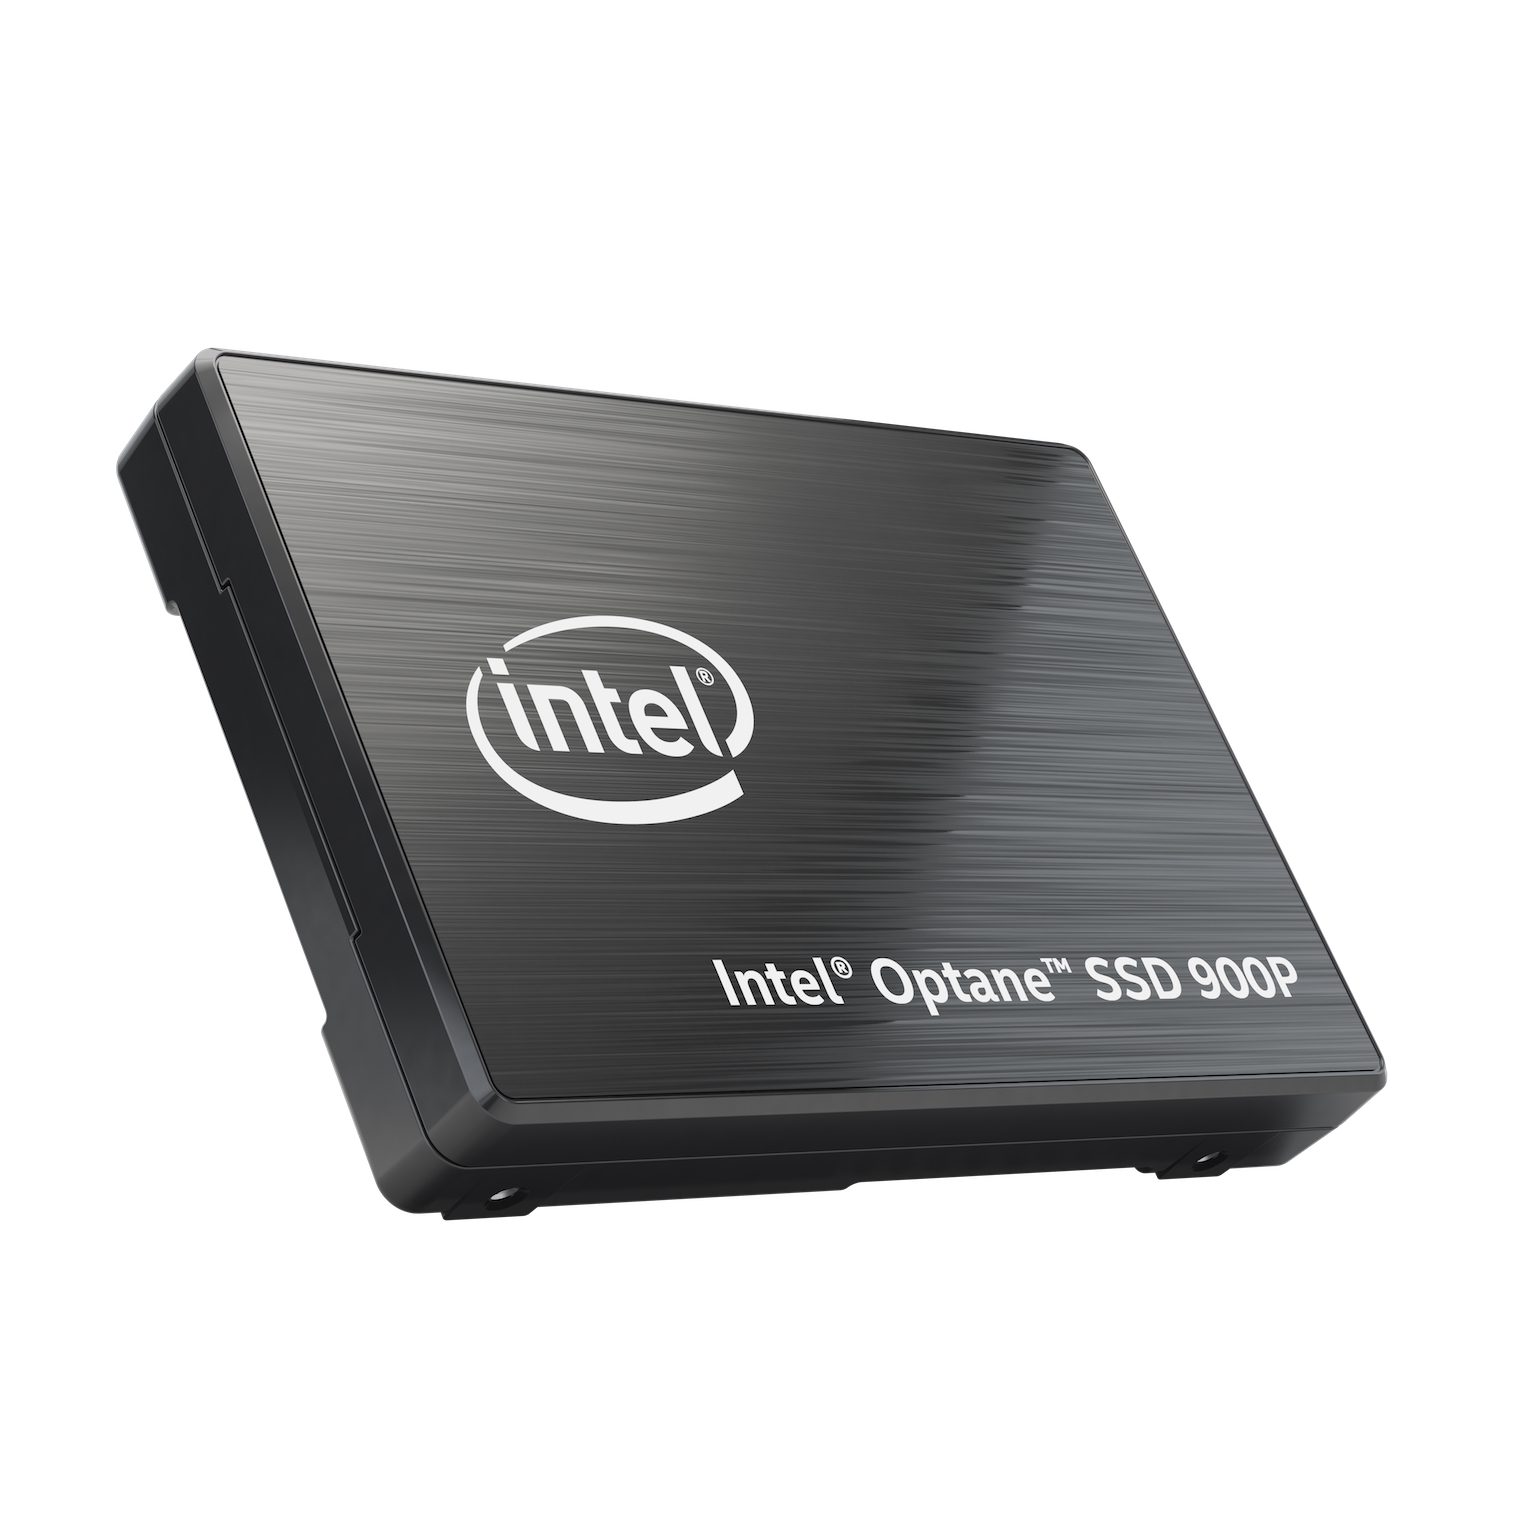 Immagine pubblicata in relazione al seguente contenuto: Intel lancia i primi drive Optane SSD 900P per gaming PC e workstation | Nome immagine: news27278_Intel-Optane-SSD-900P_1.jpg